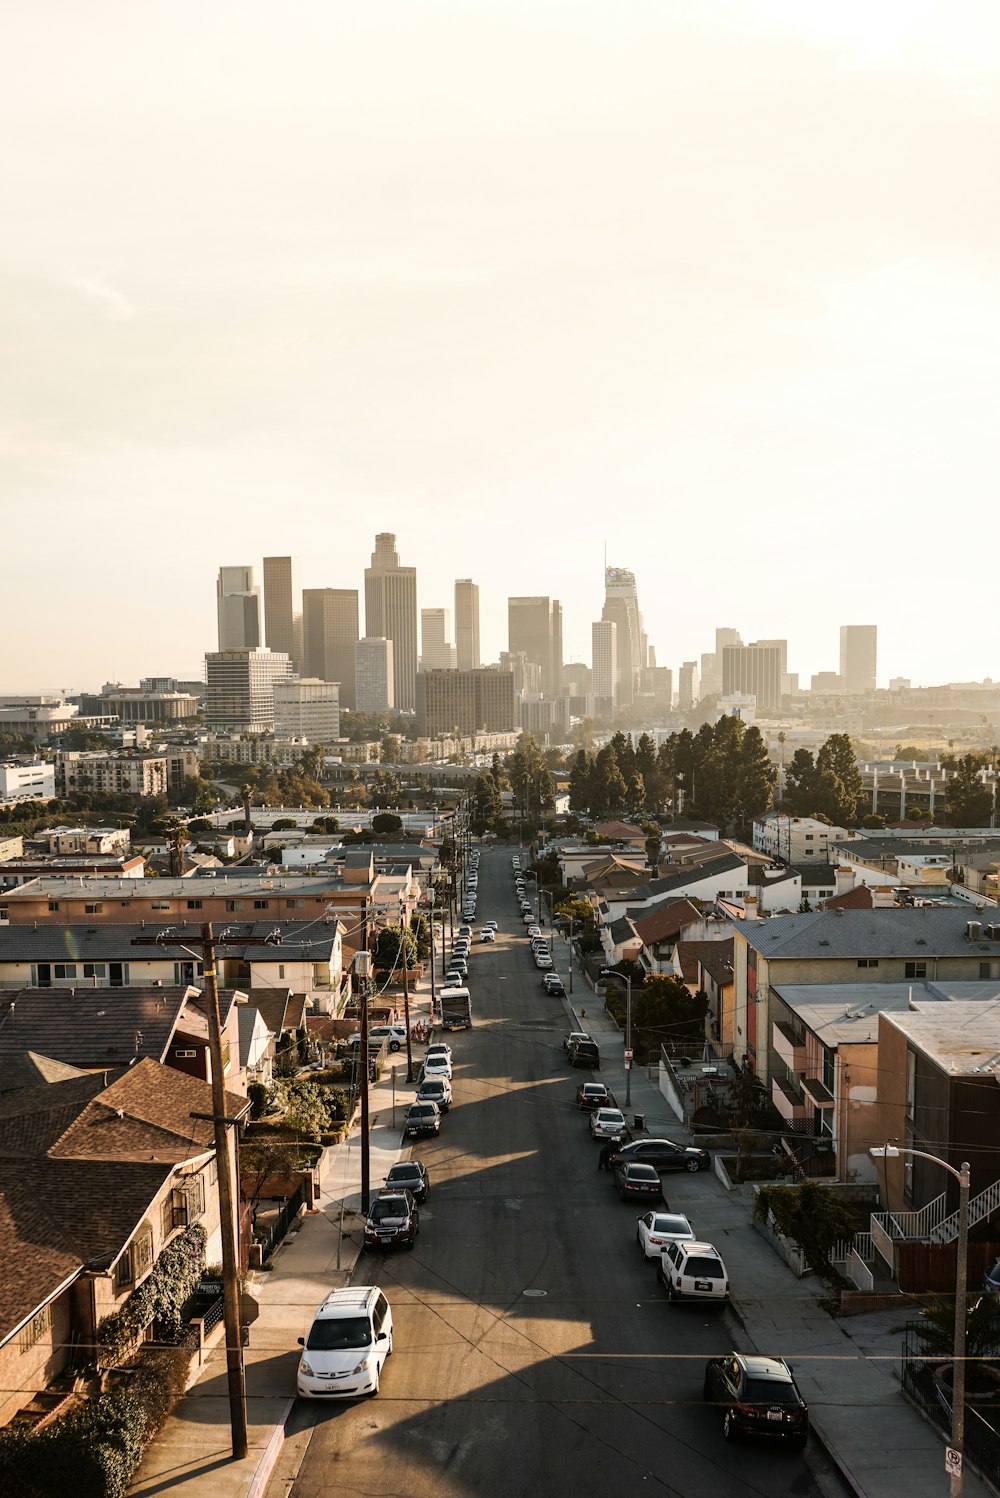 Hơn 100 Hình nền Los Angeles | Tải hình ảnh miễn phí trên Unsplash Desktop Los Angeles đem đến nguồn cảm hứng vô tận dành cho bạn để trang trí nền tảng. Hãy khám phá những bức ảnh đẹp nhất về thành phố biển tuyệt đẹp Los Angeles trên Unsplash và làm cho nền tảng của bạn thật nổi bật và ấn tượng.